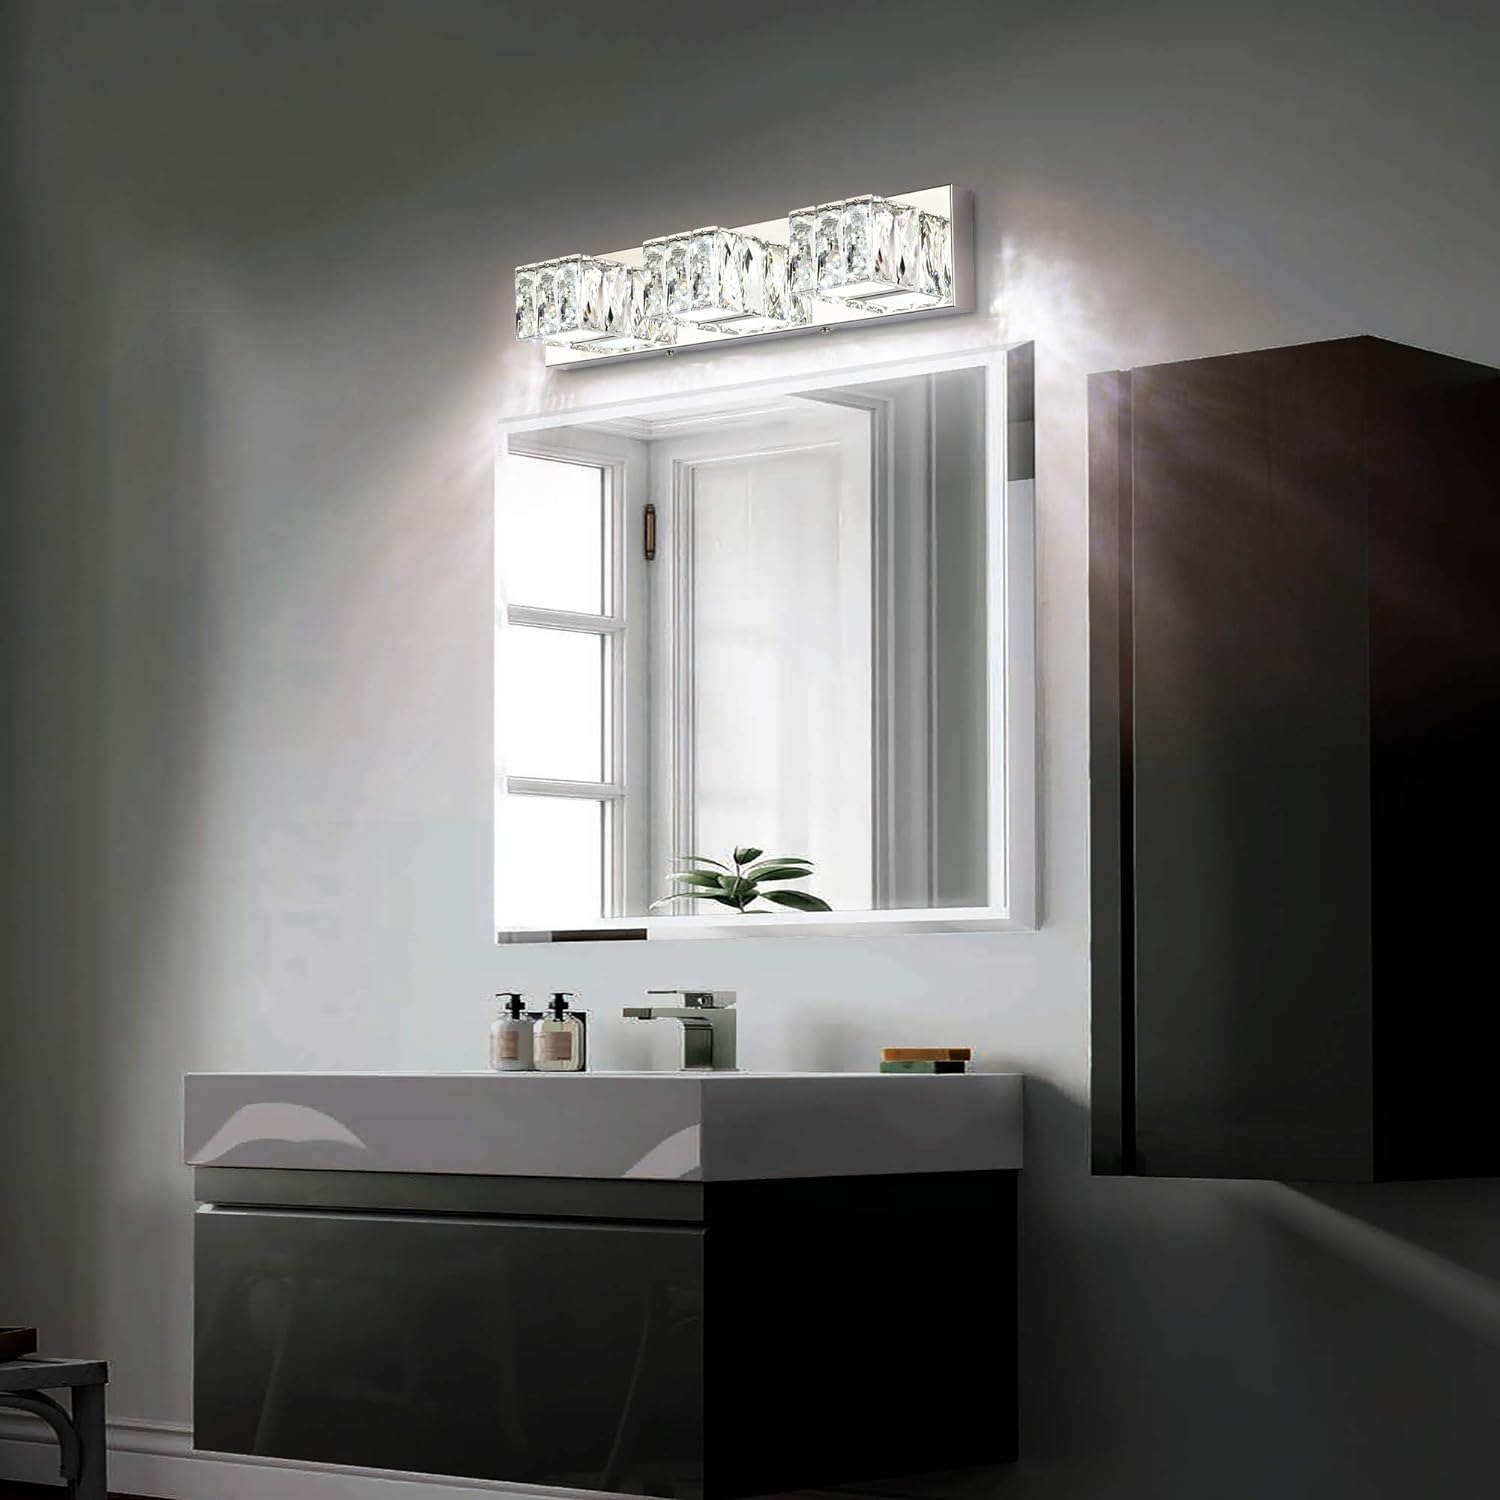 ZUZITO LED Bathroom Vanity Lighting Fixtures Modern Crystal Vanity Light Over Mirror White Light(3 Lights)